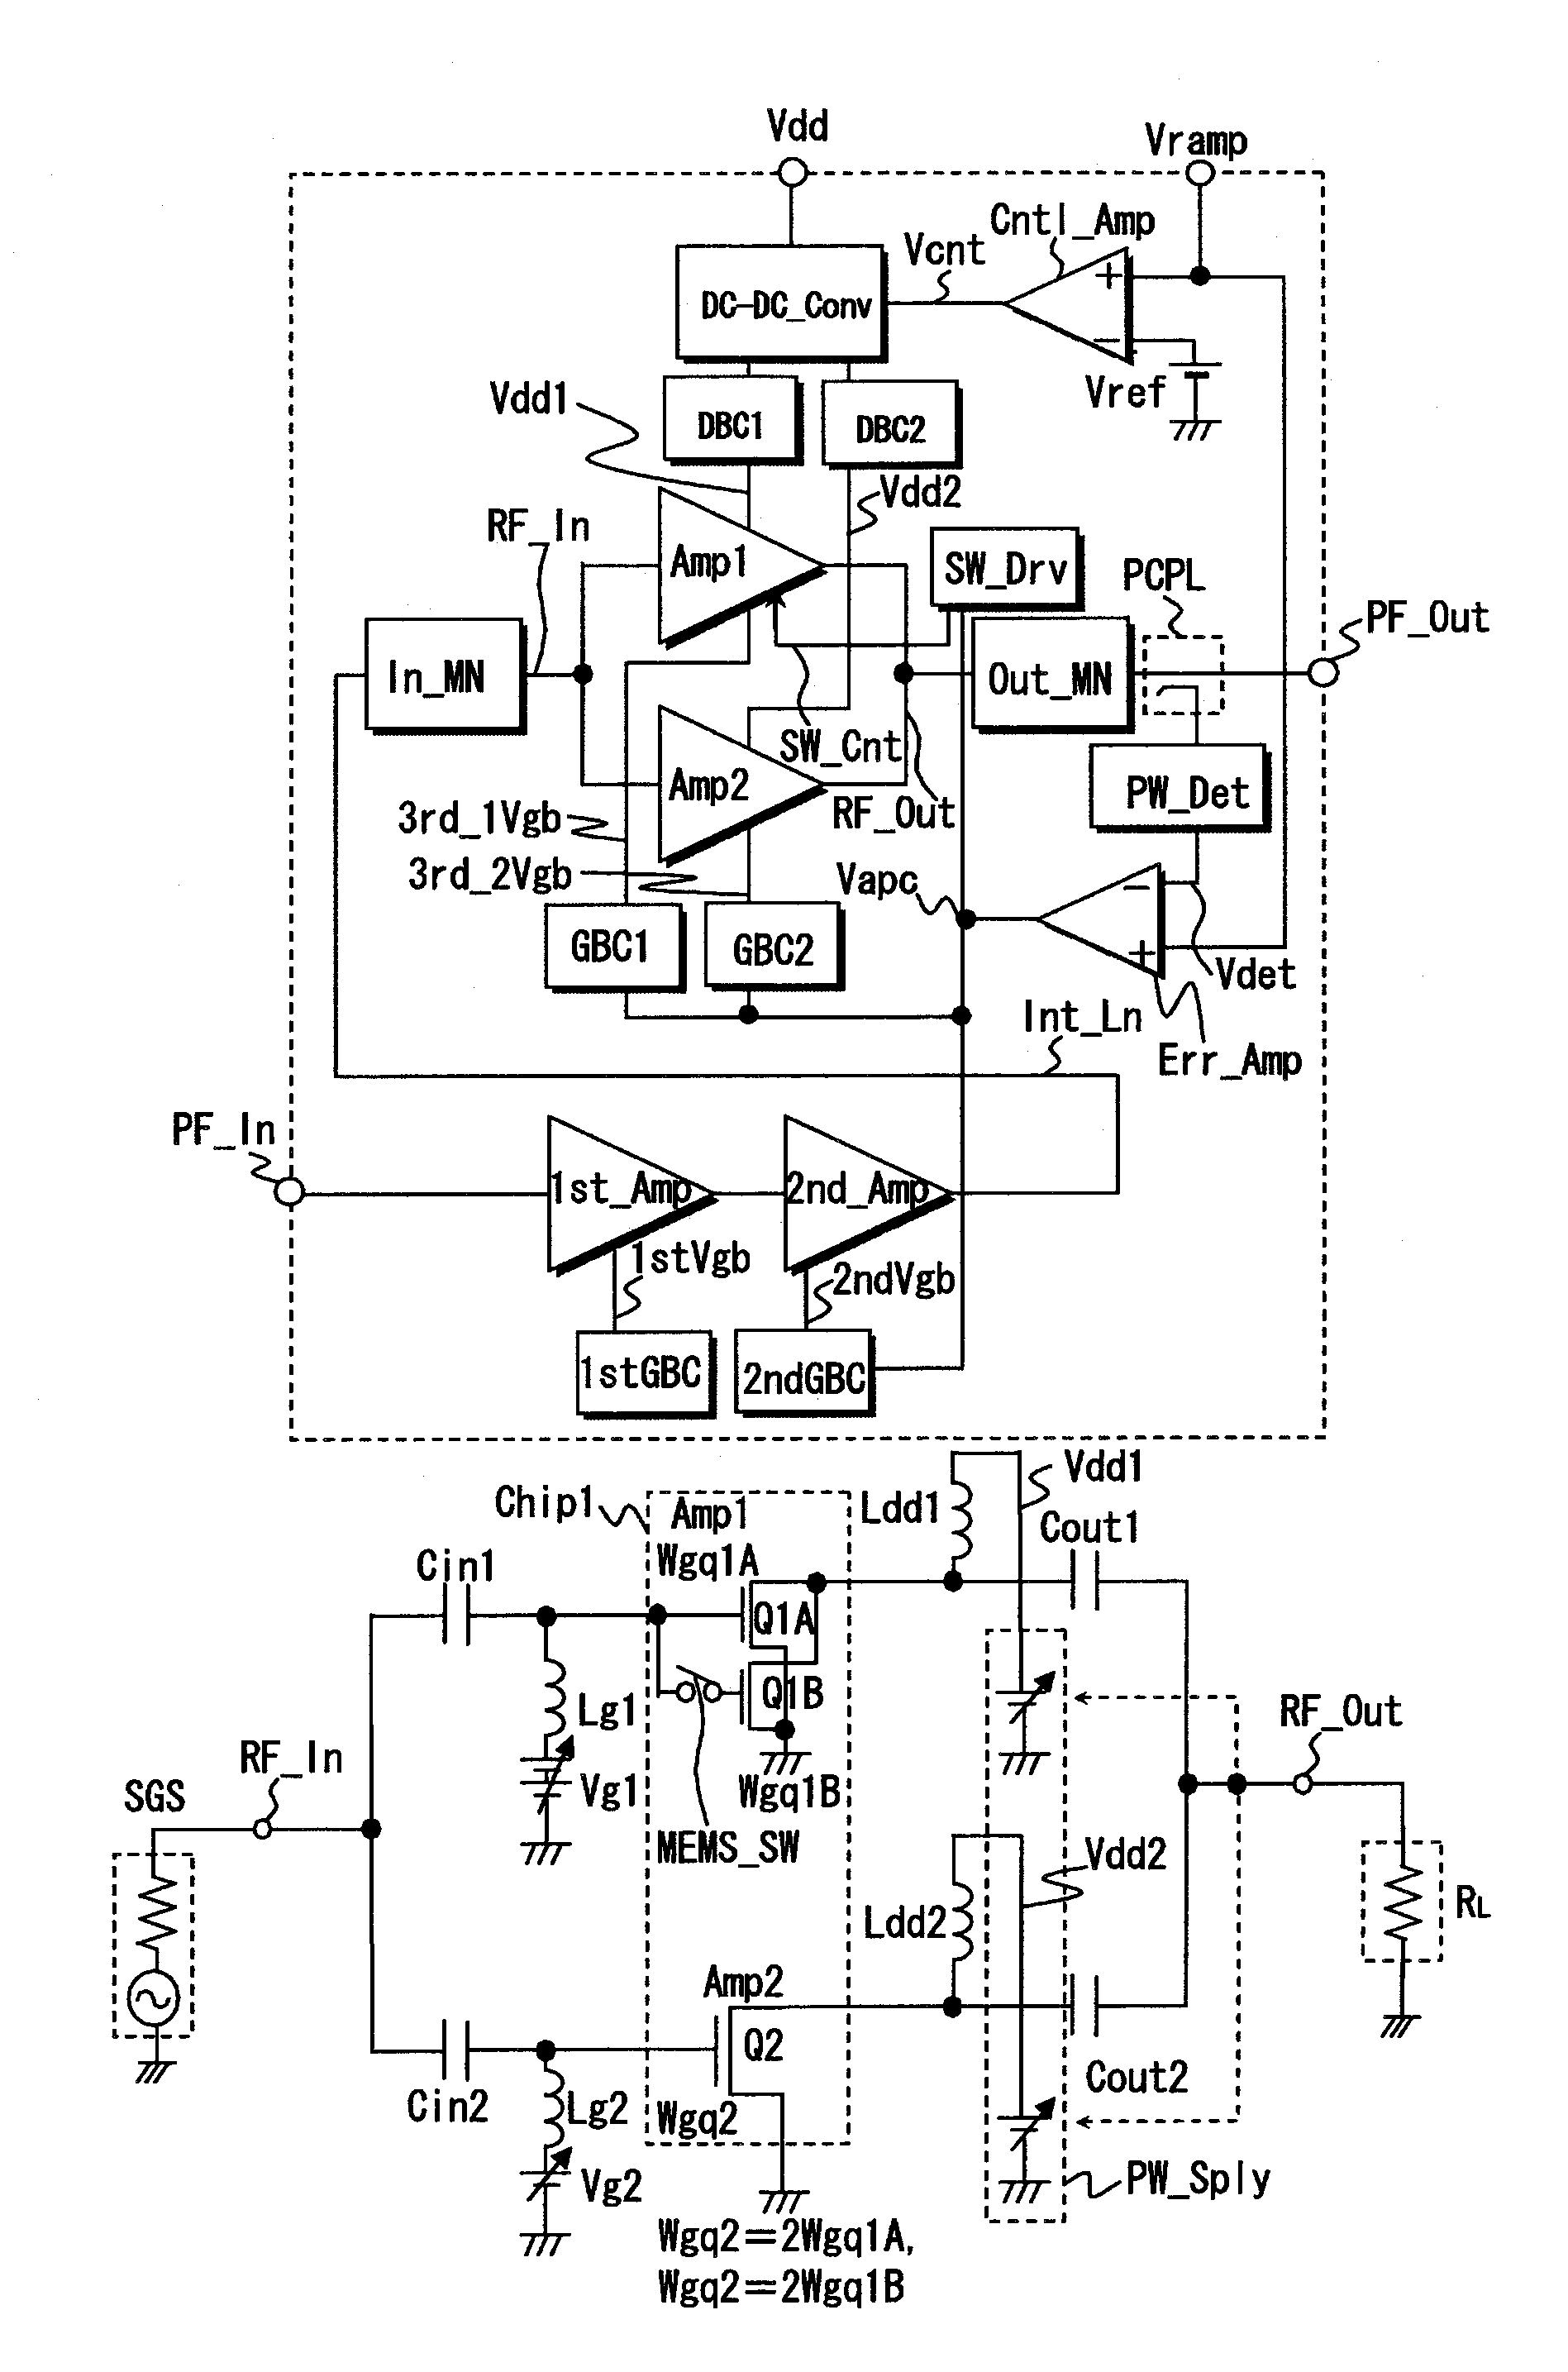 RF power amplifier